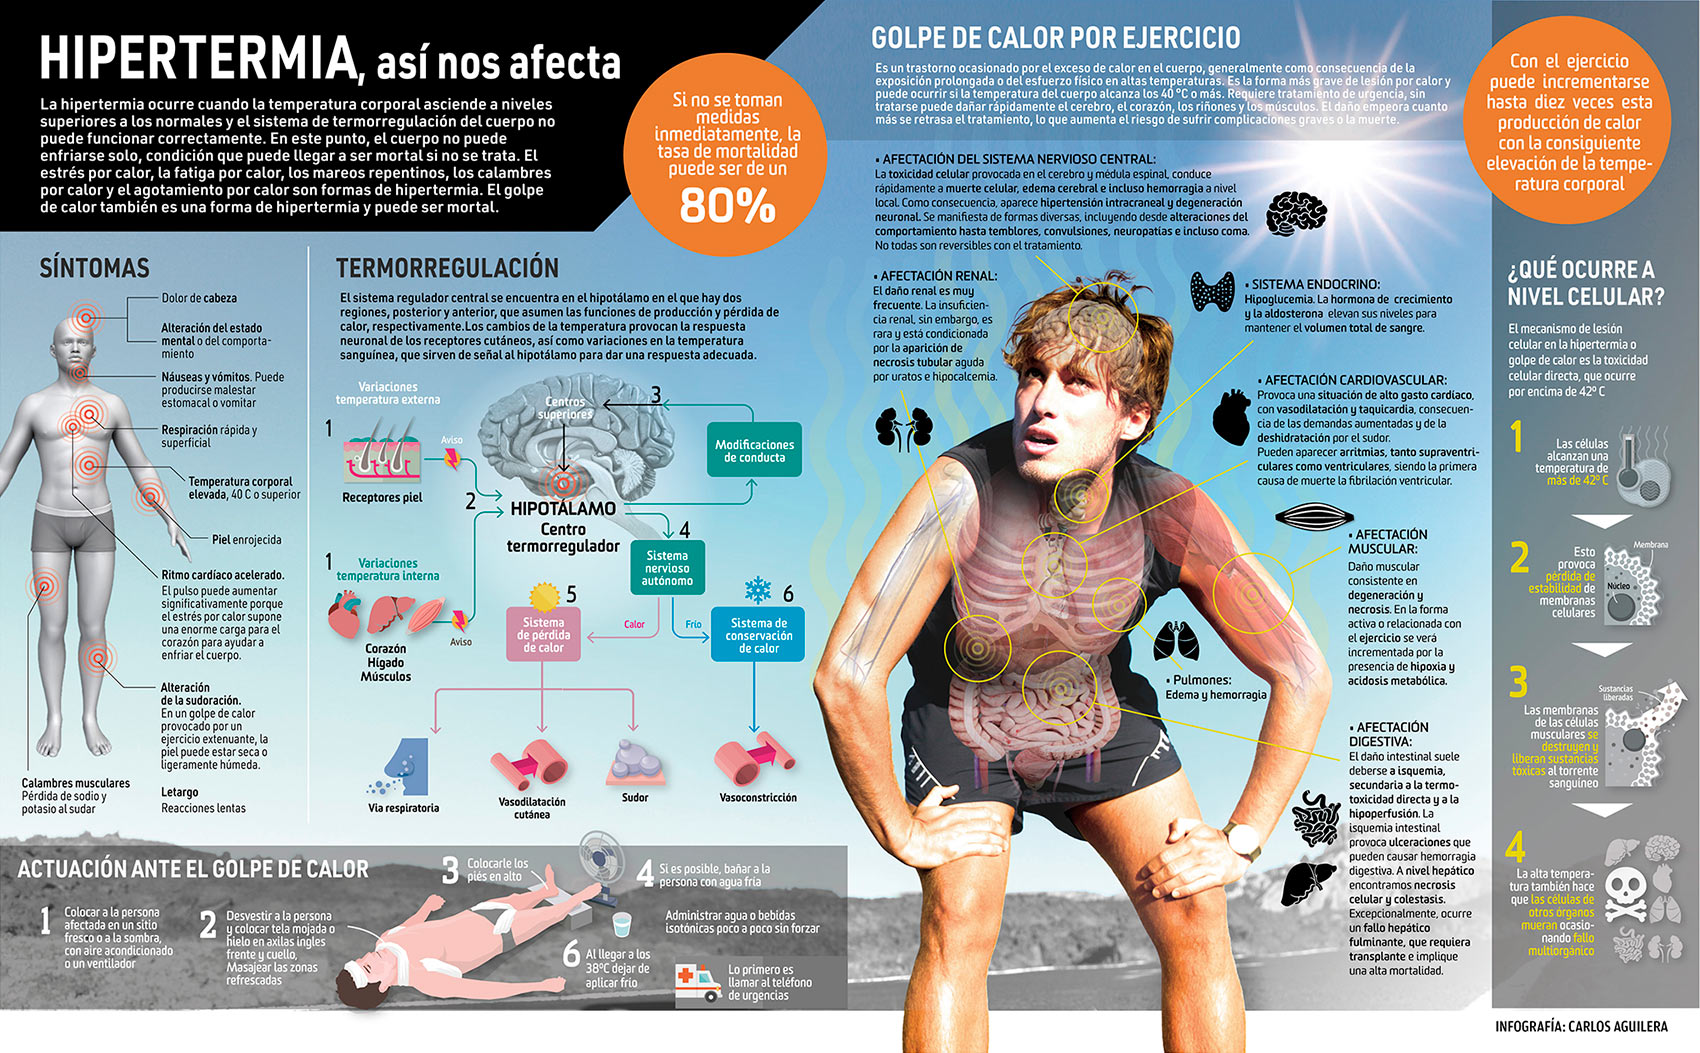 Elevadas temperaturas: ¿Qué efectos tienen para el cuerpo y la mente? INFOGRAFÍA de Carlos Aguilera.